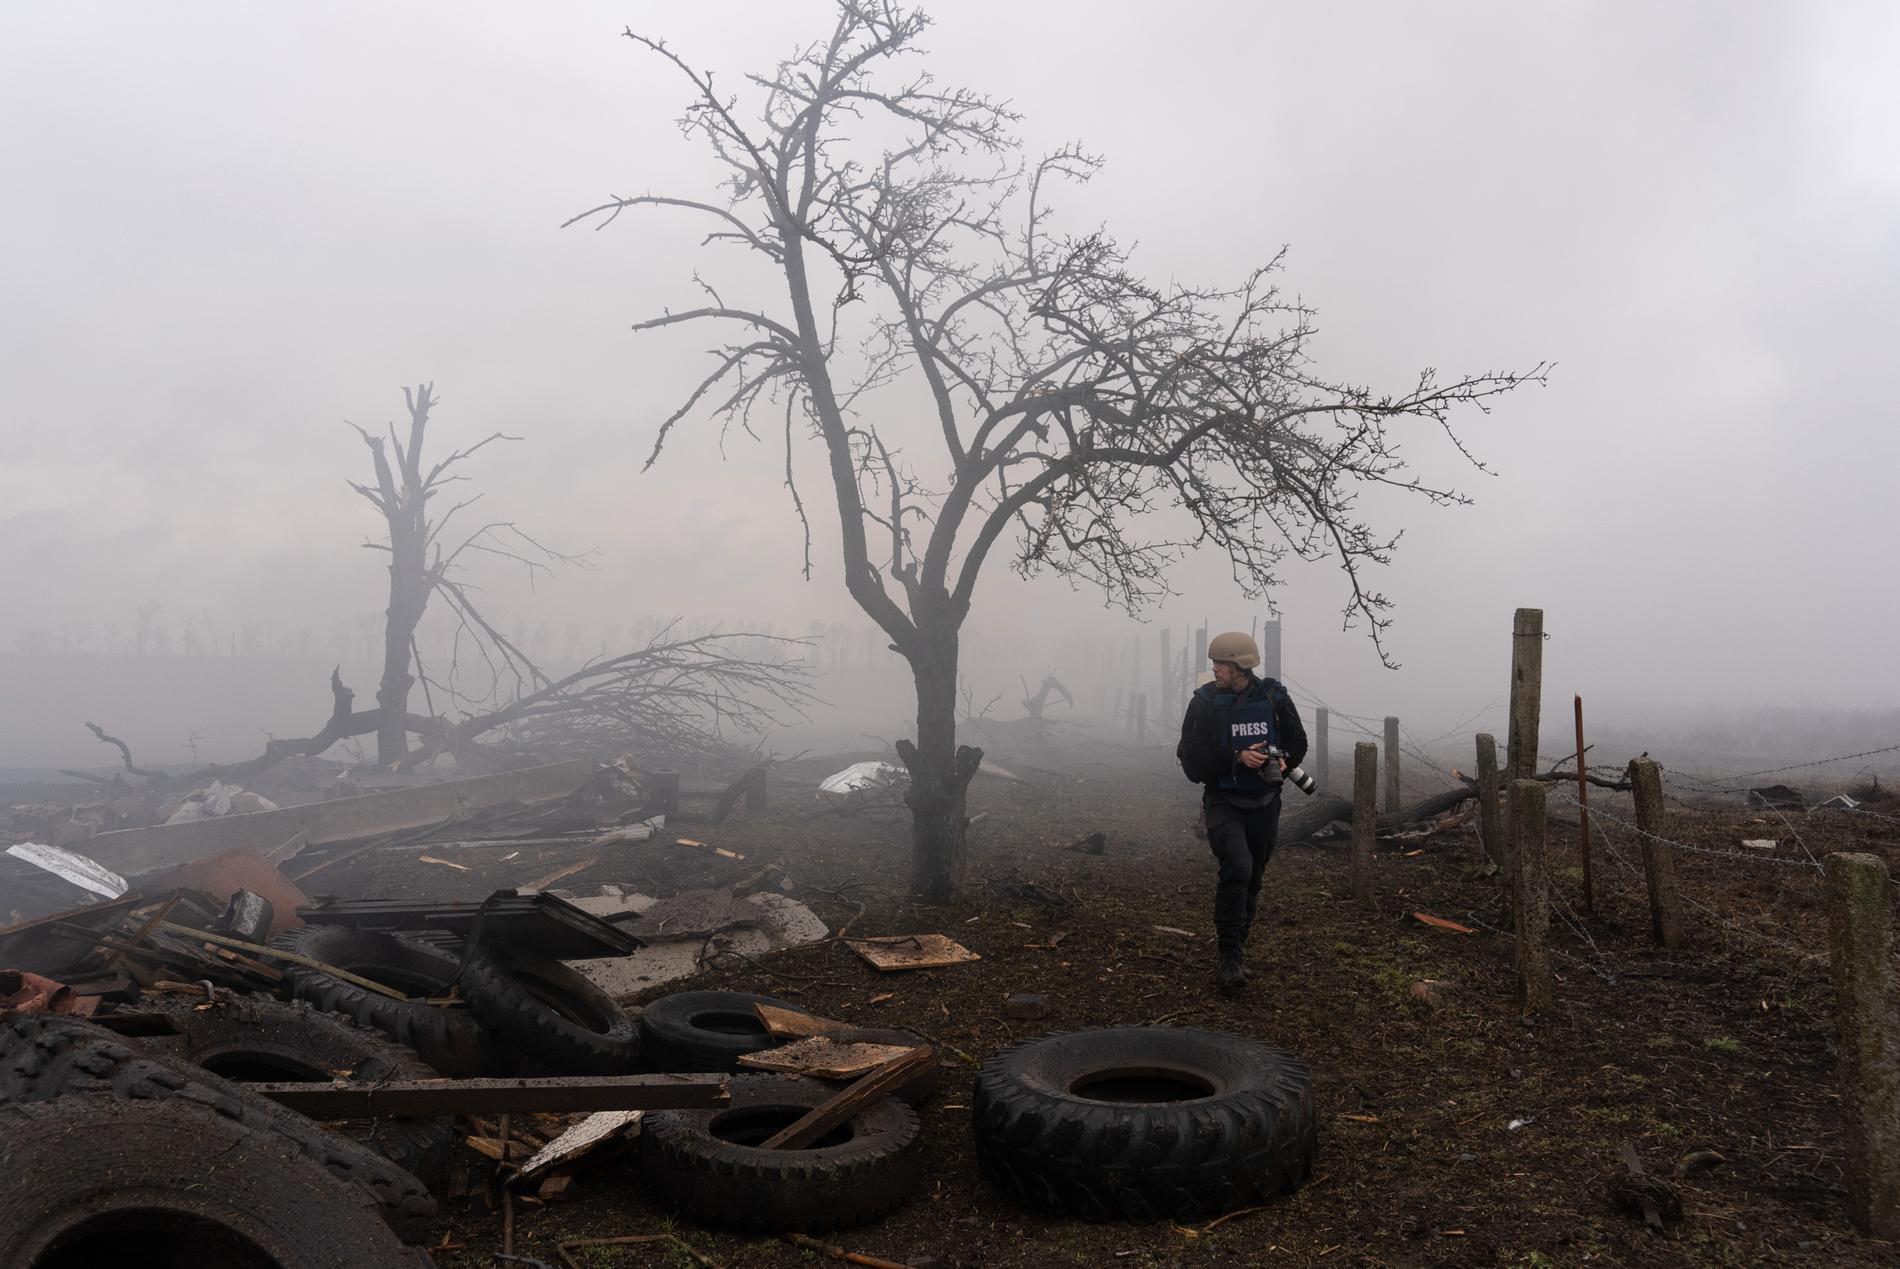 Fotografen Evgeniy Maloletka på platsen för en rysk attack, den 24 feburari 2022. Bild från filmen “20 Days in Mariupol.”